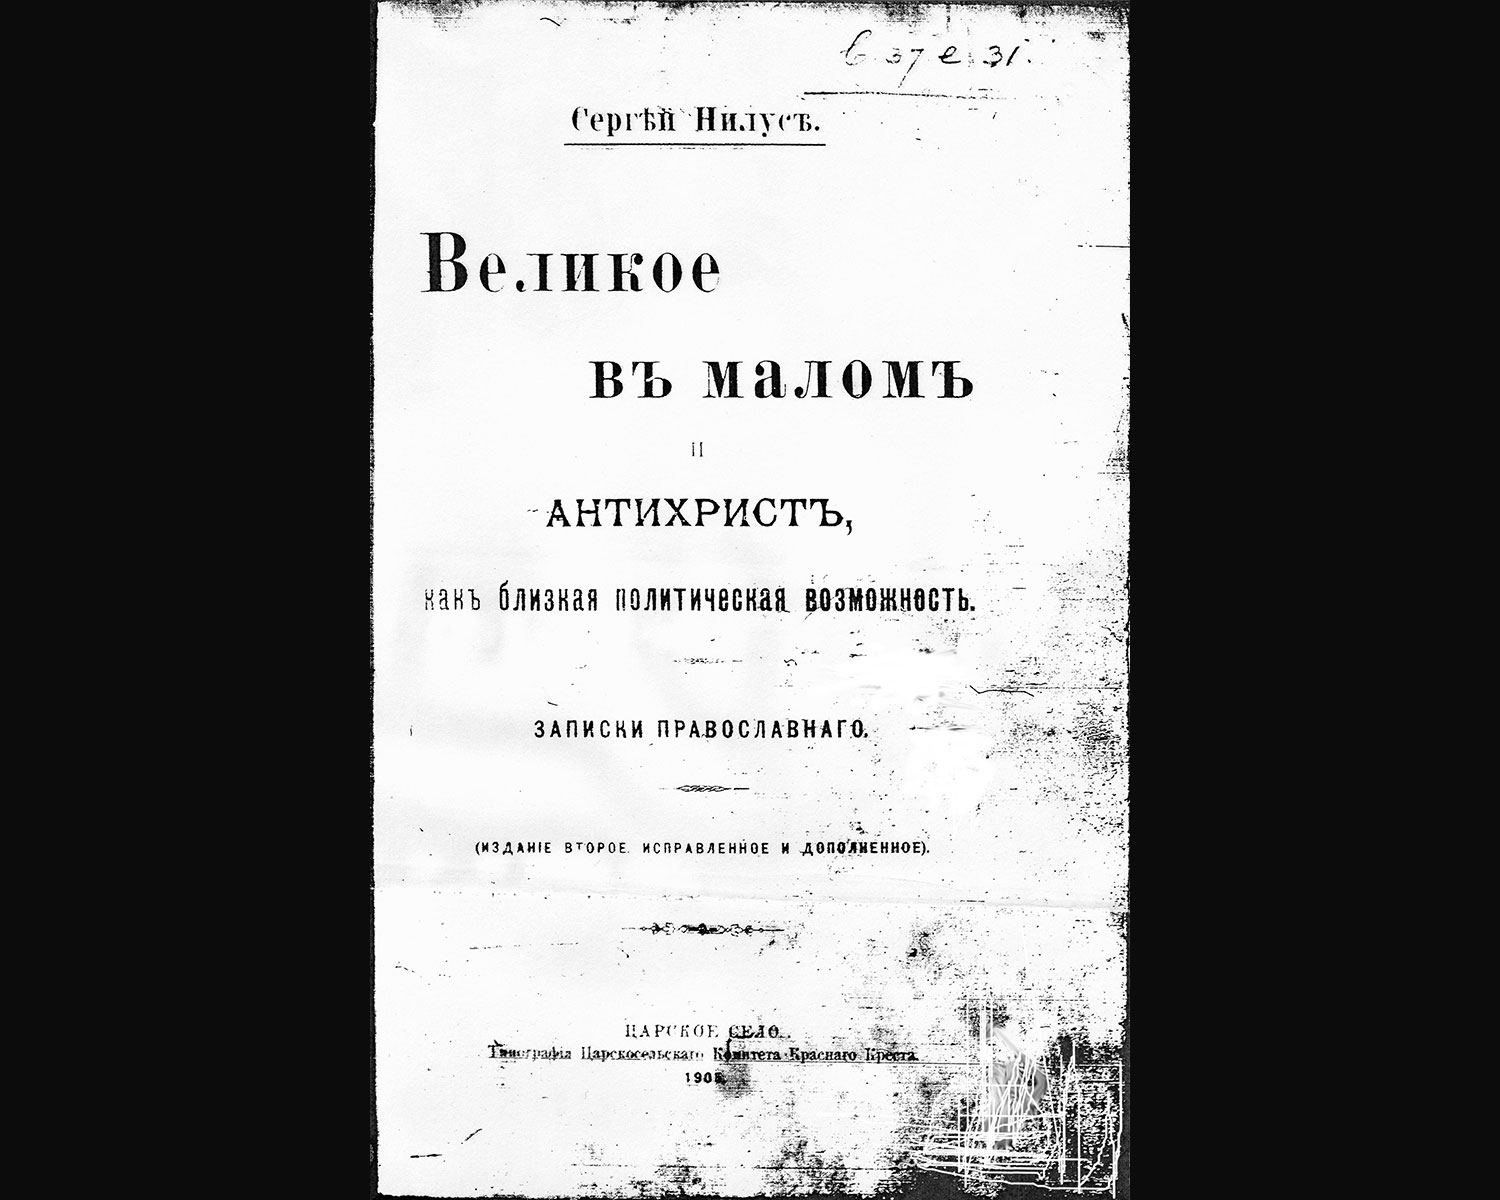 Sergej Nilus' bearbetning  av Sions vises protokoll från 1905..